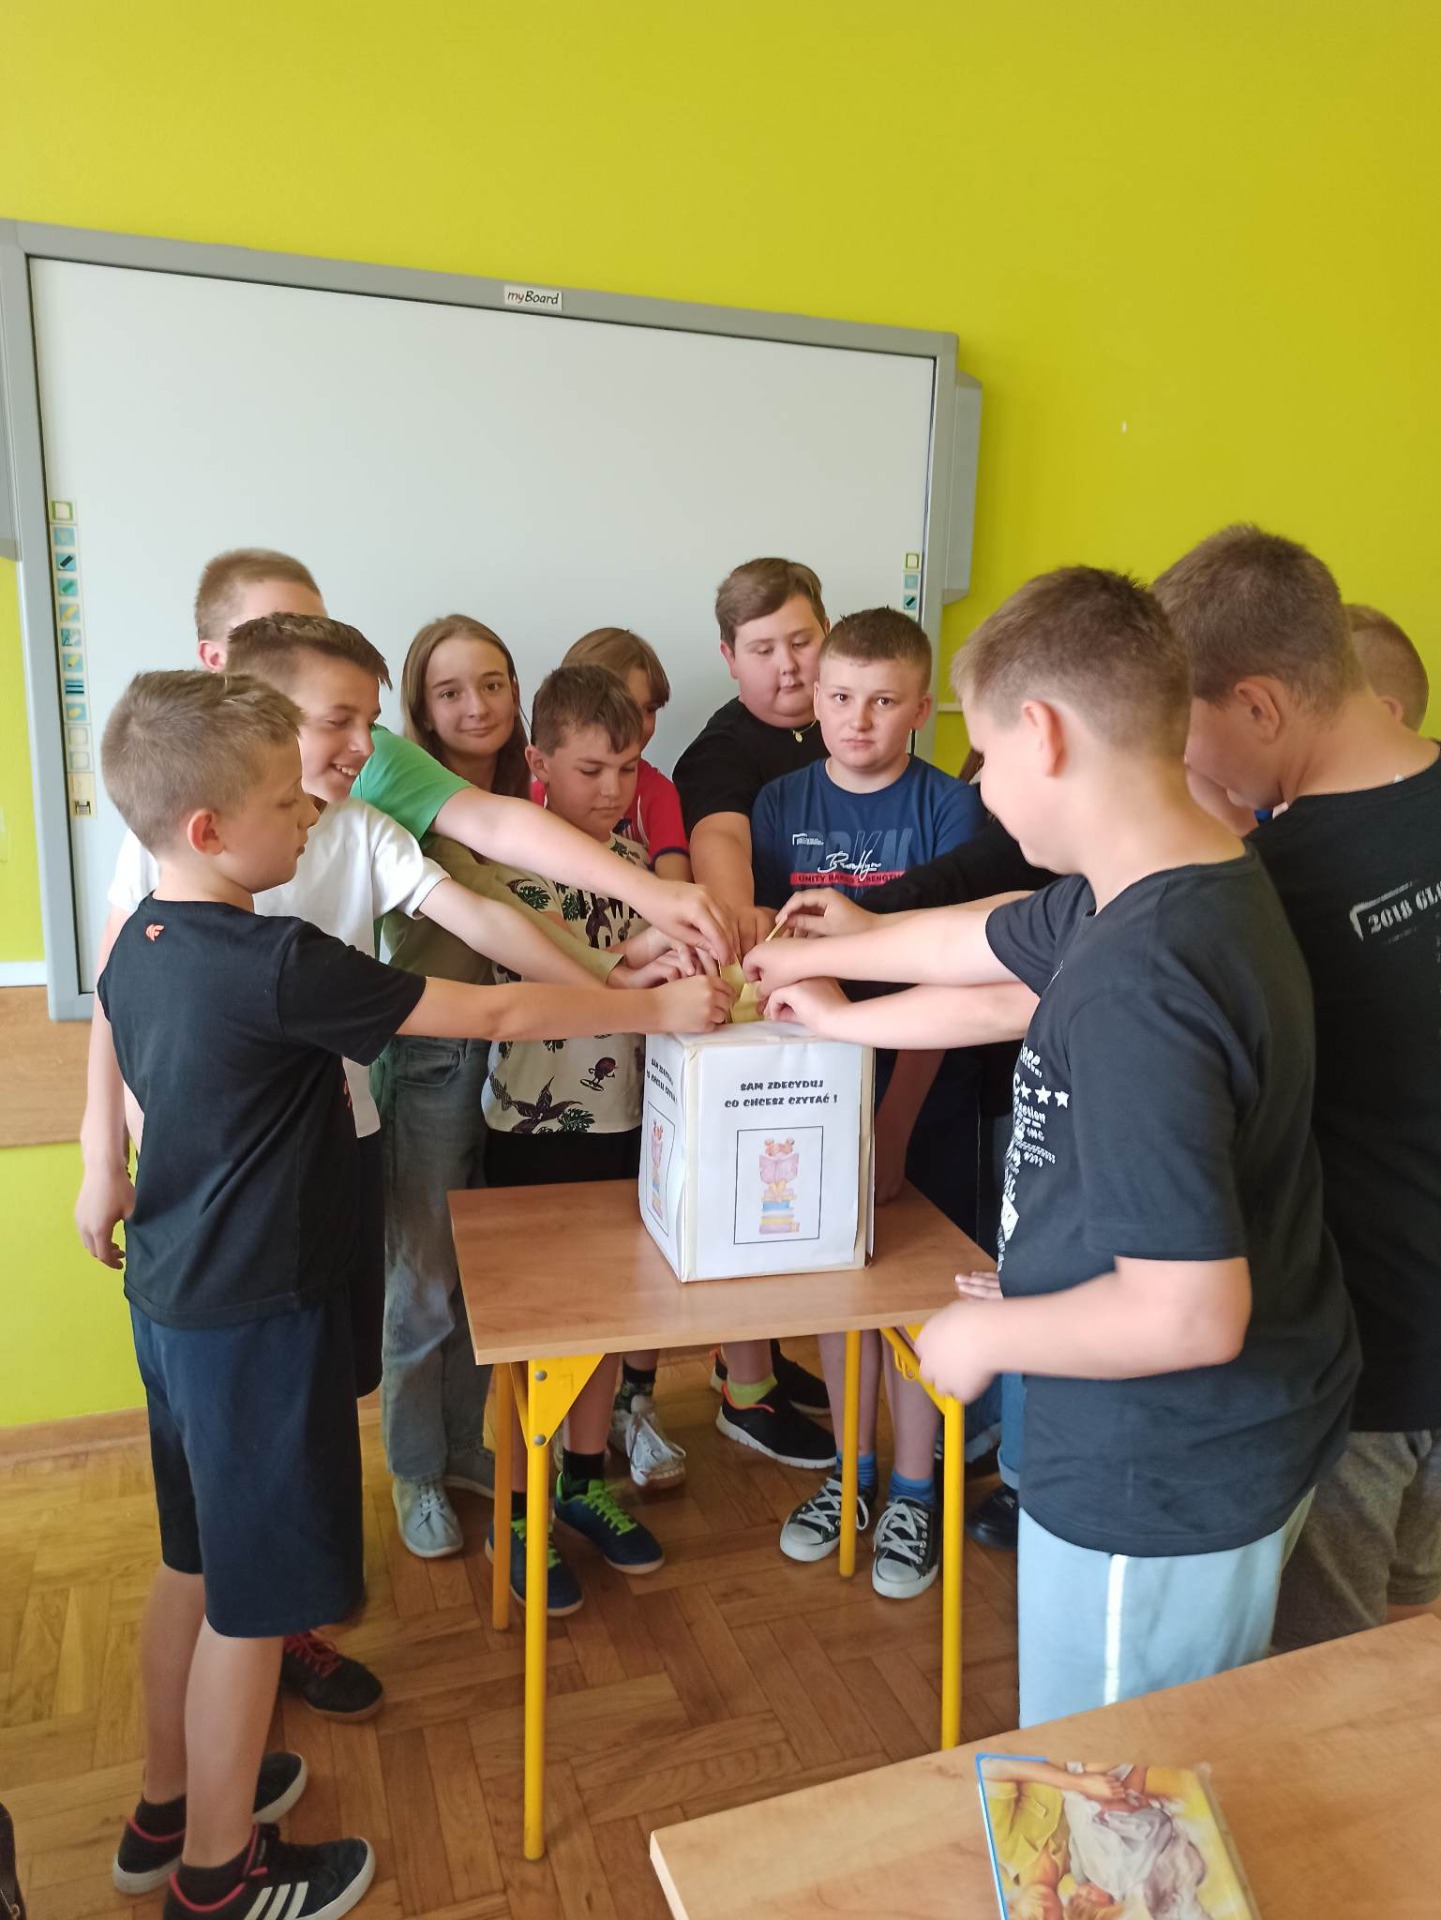 Na zdjęciu widać grupę uczniów klasy piątej wrzucających karteczki do pudełka na którym jest napisane  SAM  ZDECYDUJ CO CHCESZ CZYTAĆ. Za uczniami widać Żółtą ścianę, na której wisi tablica interaktywna.